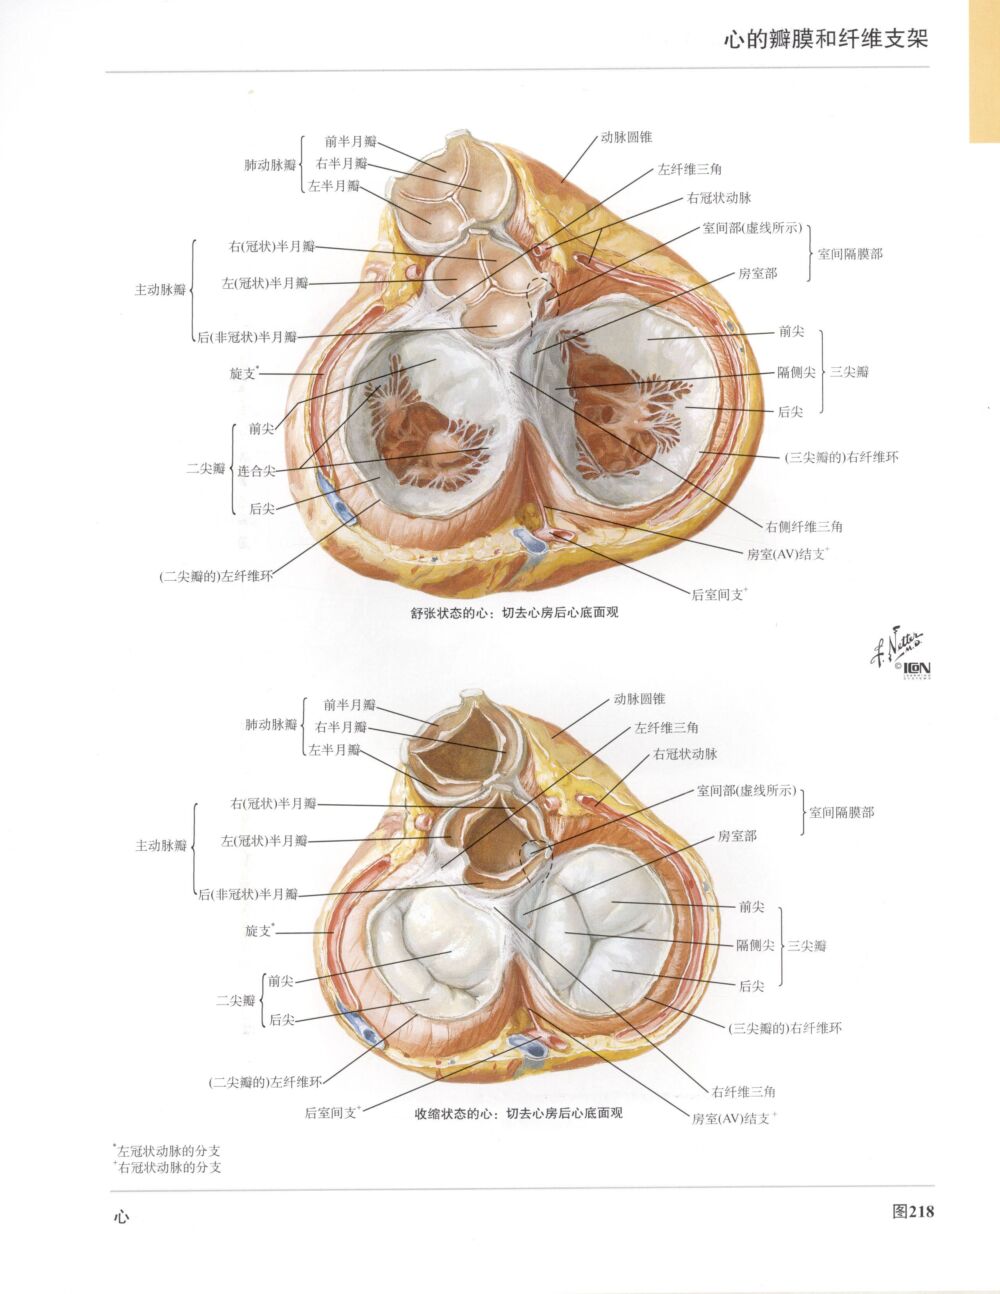 高清人体解剖彩色图谱-心脏